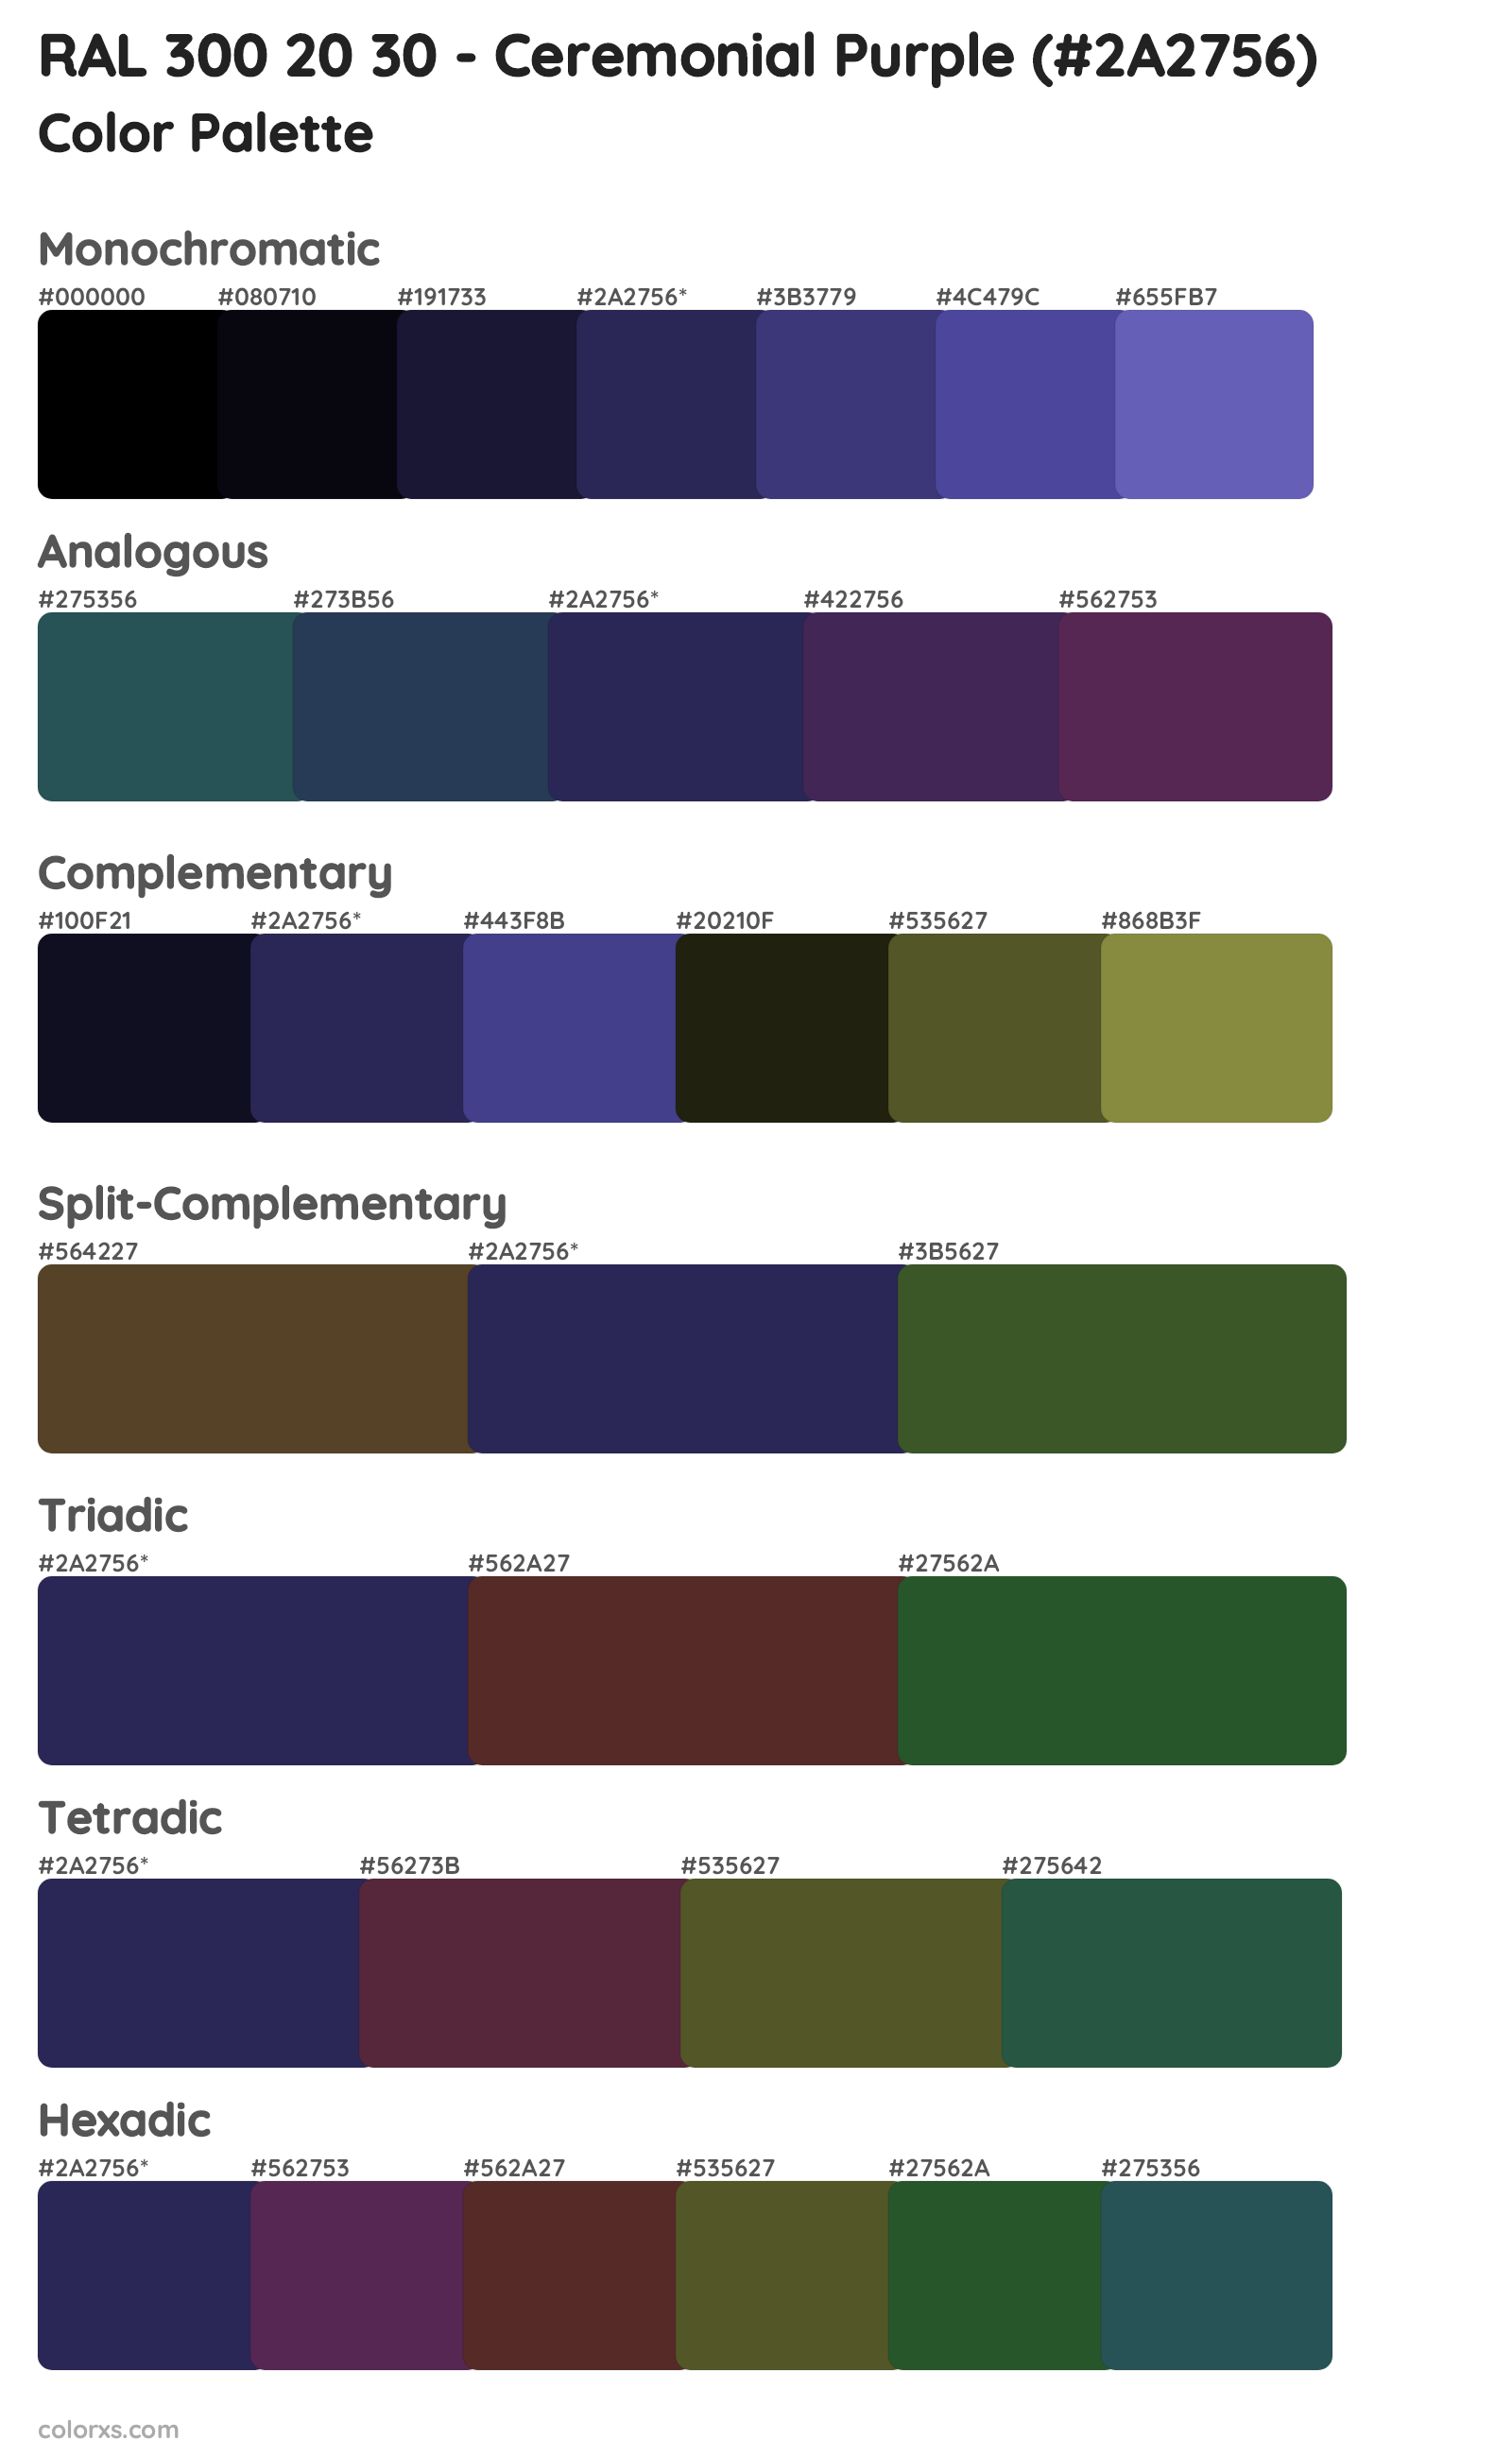 RAL 300 20 30 - Ceremonial Purple Color Scheme Palettes